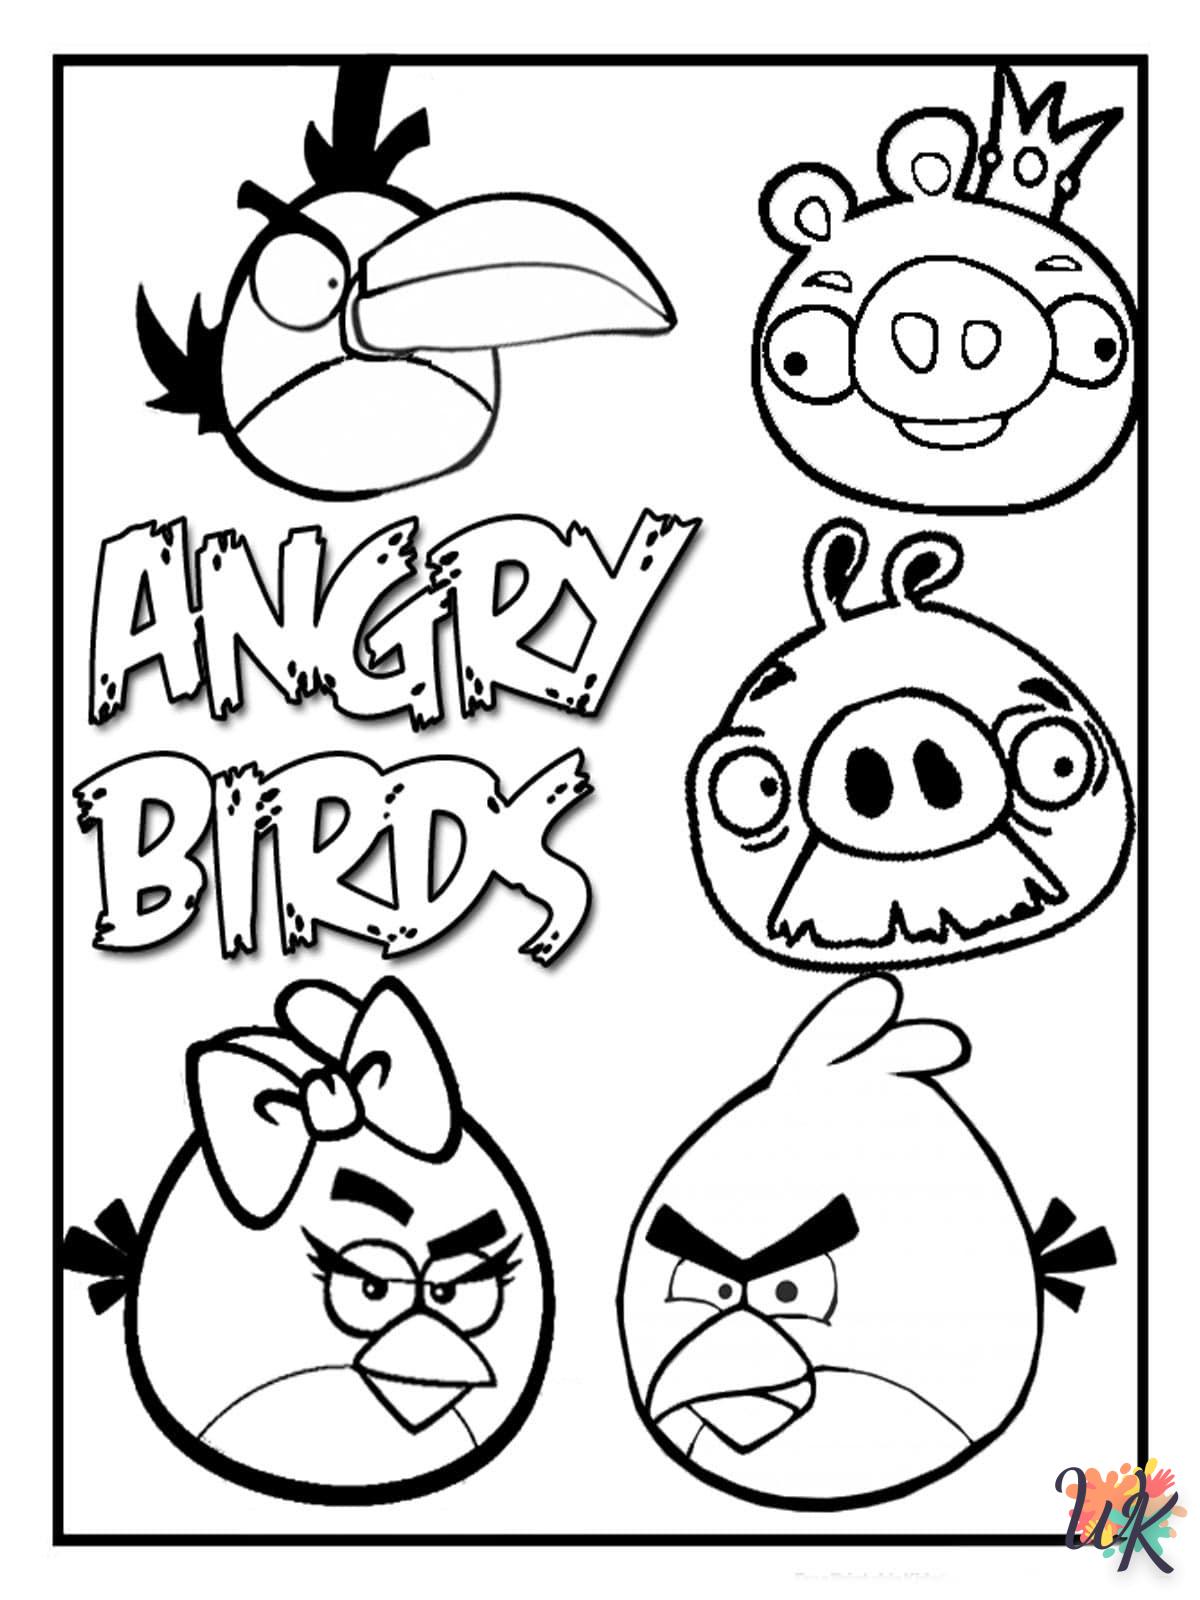 coloriage Angry Birds  à imprimer pour enfant de 3 ans